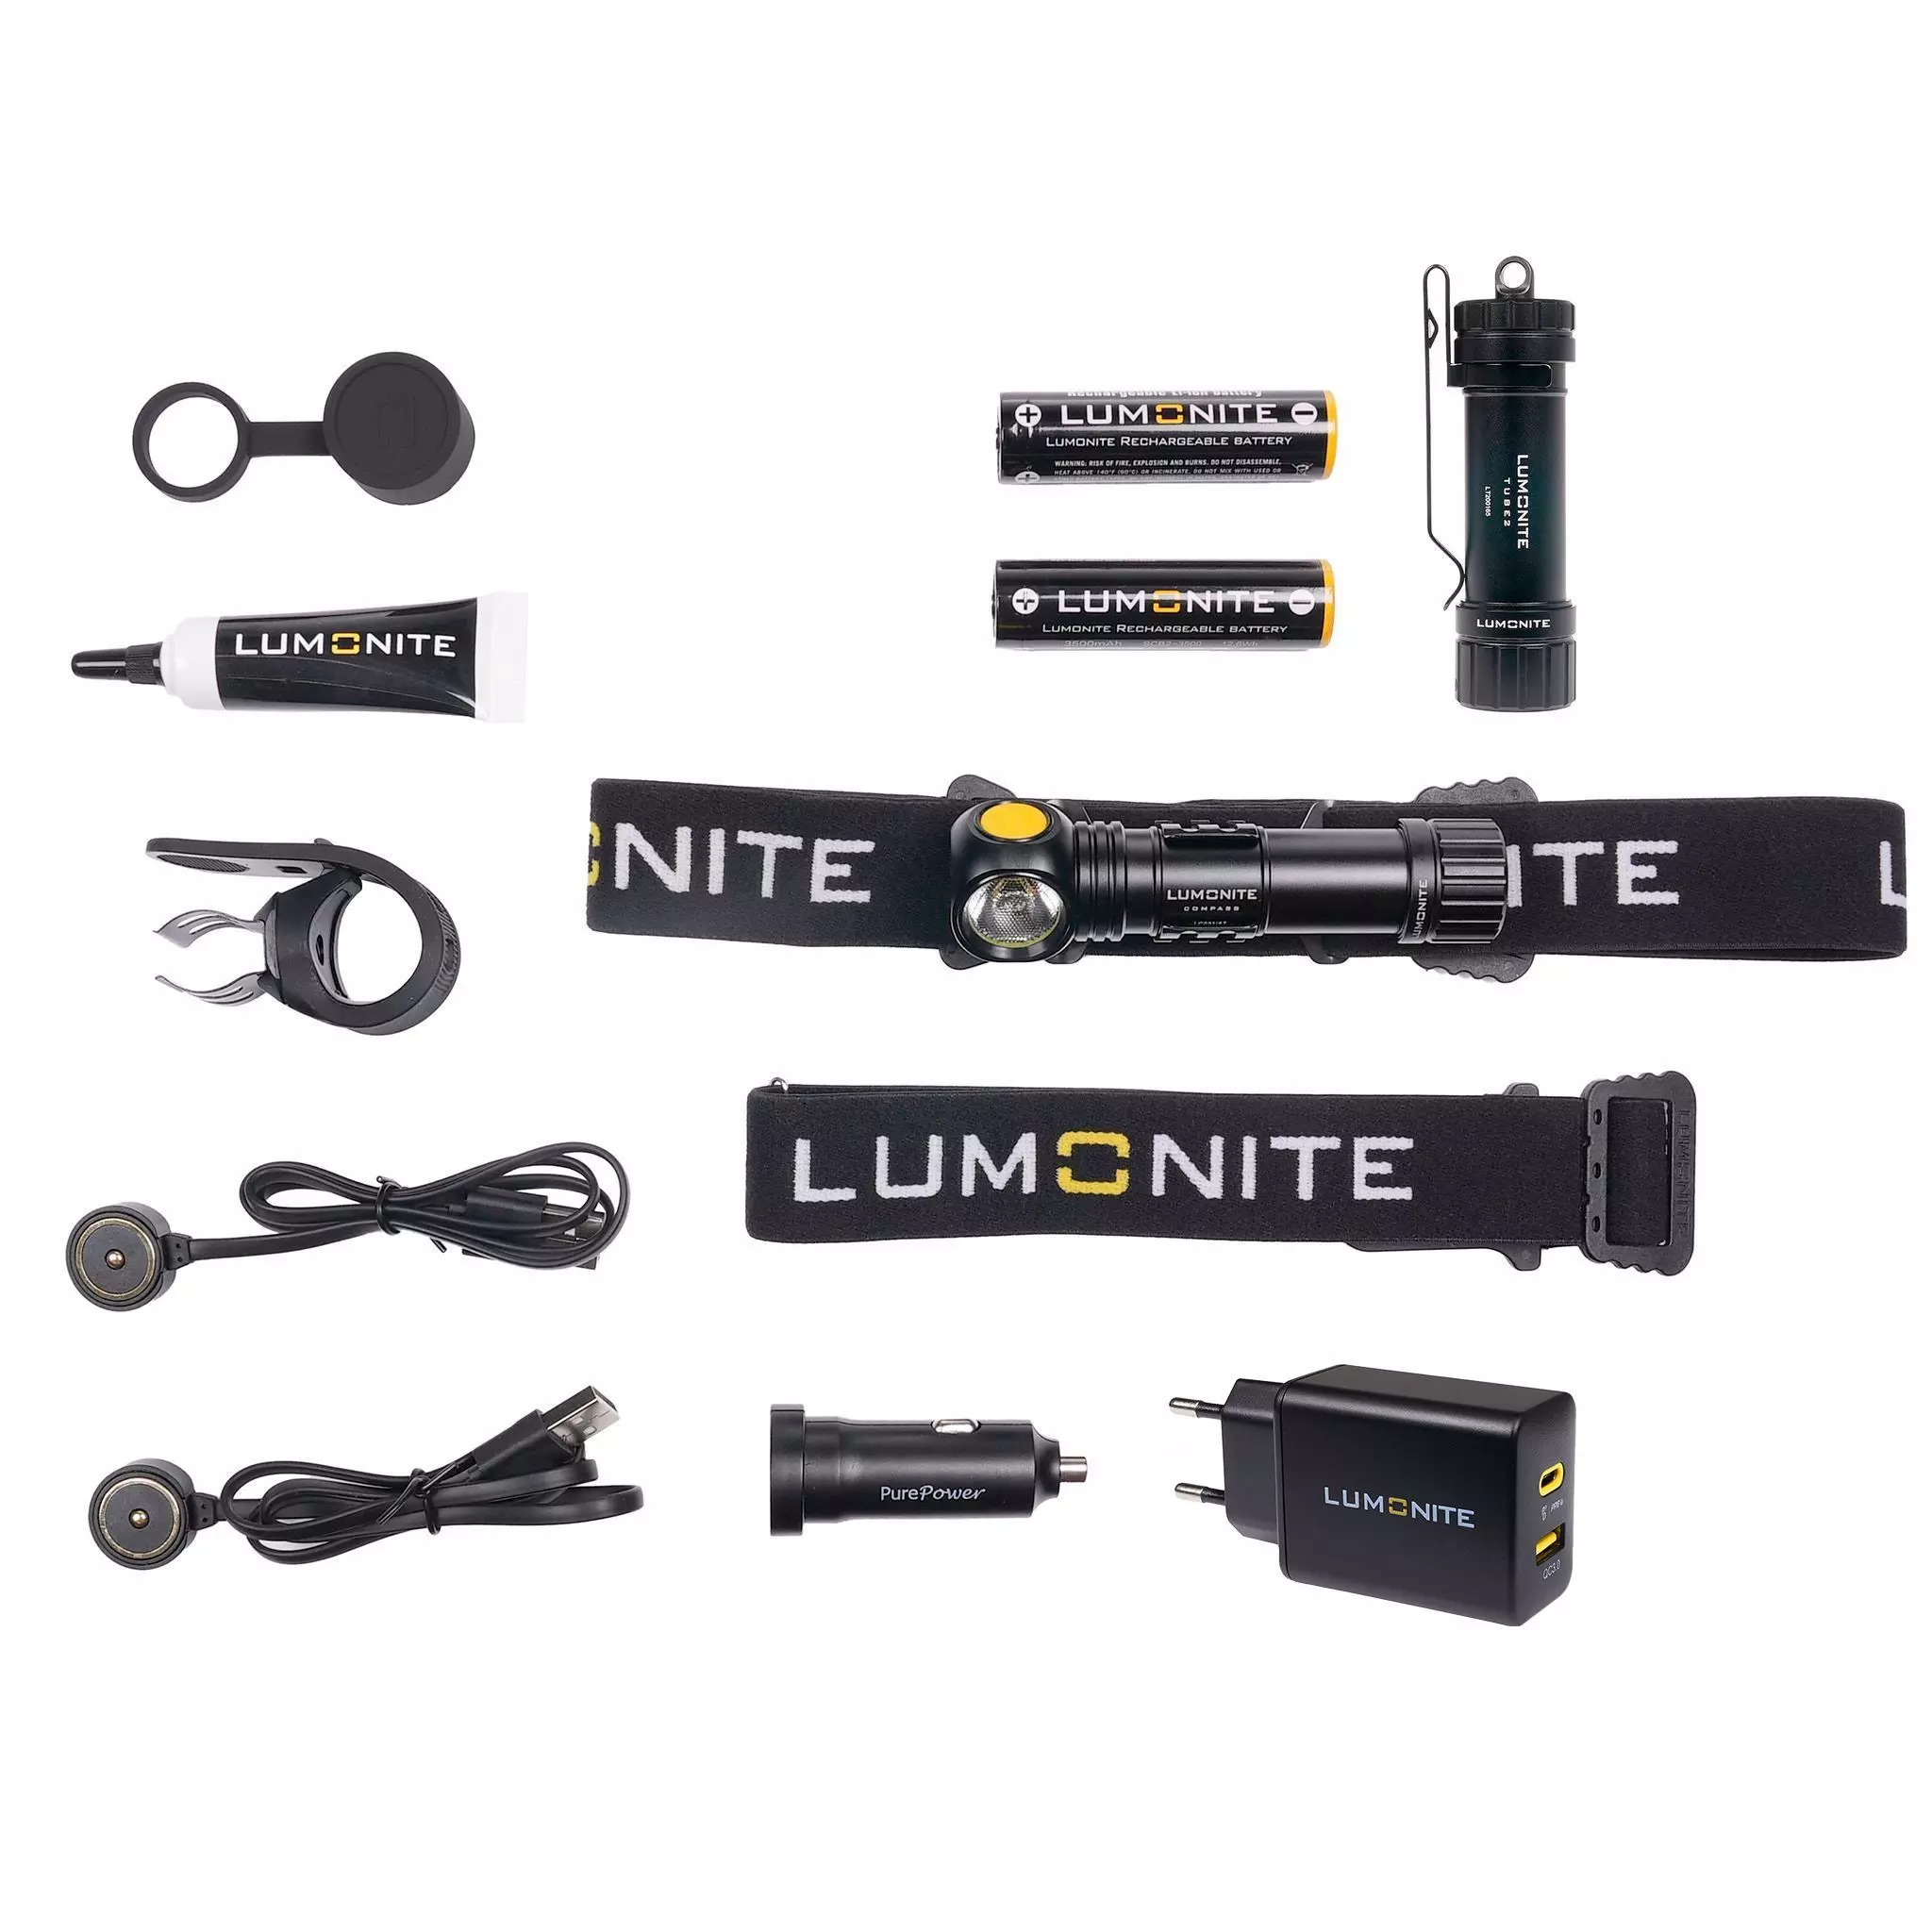 Otsalamppu Lumonite® Compass, 1250 Lm, Premium-Setti